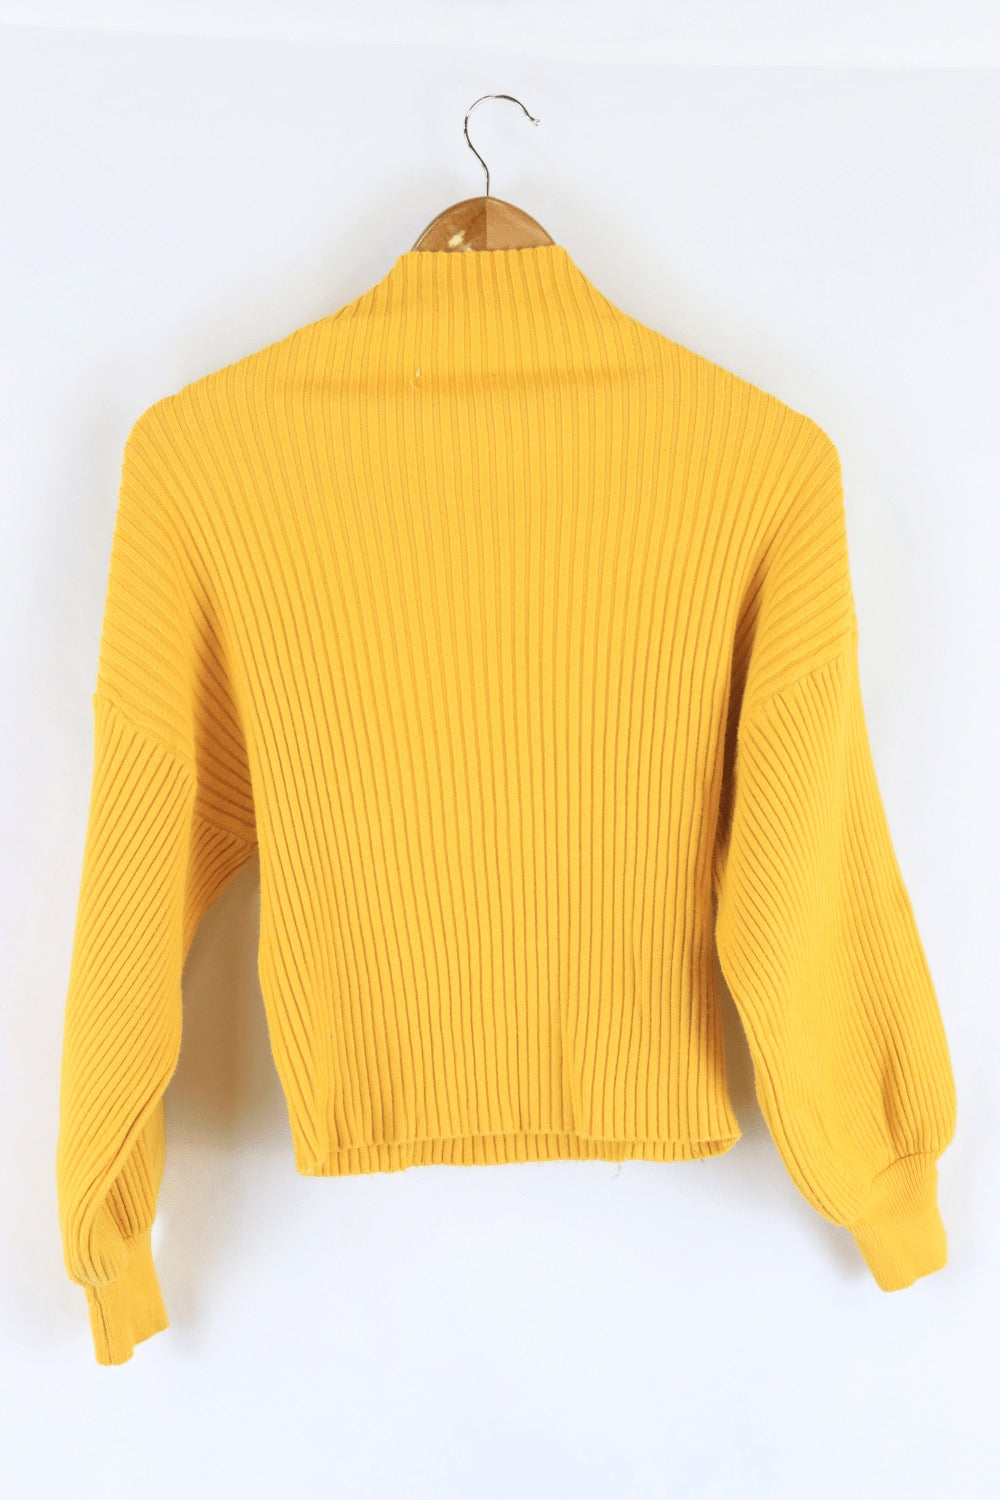 Dissh Yellow Knit Sweater S